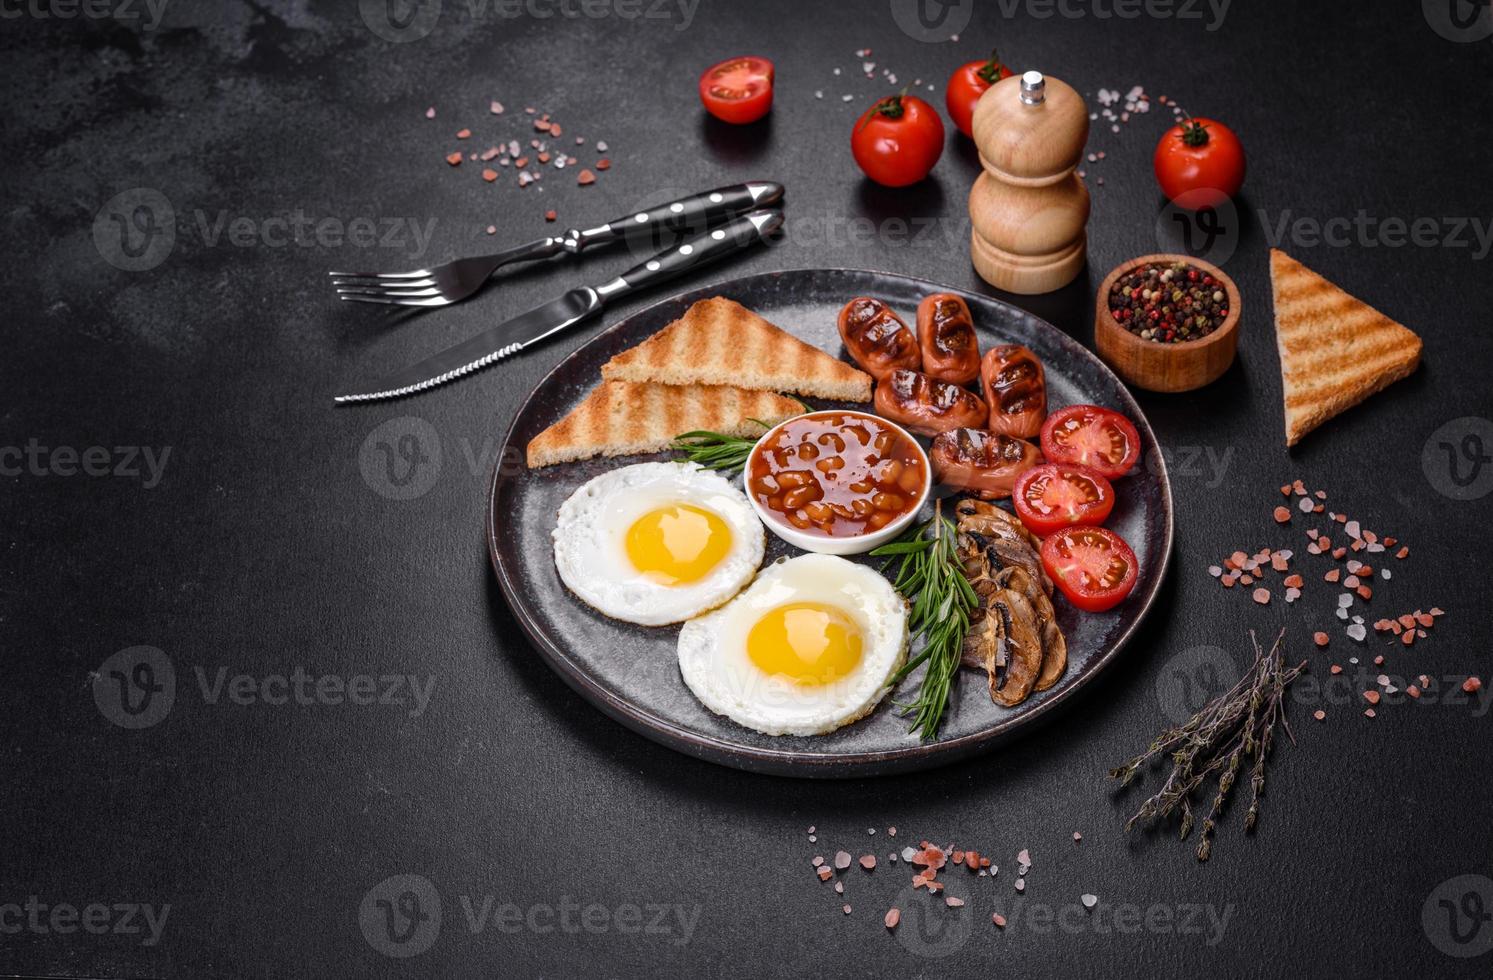 komplettes englisches frühstück mit bohnen, spiegeleiern, gebratenen würsten, tomaten und pilzen foto